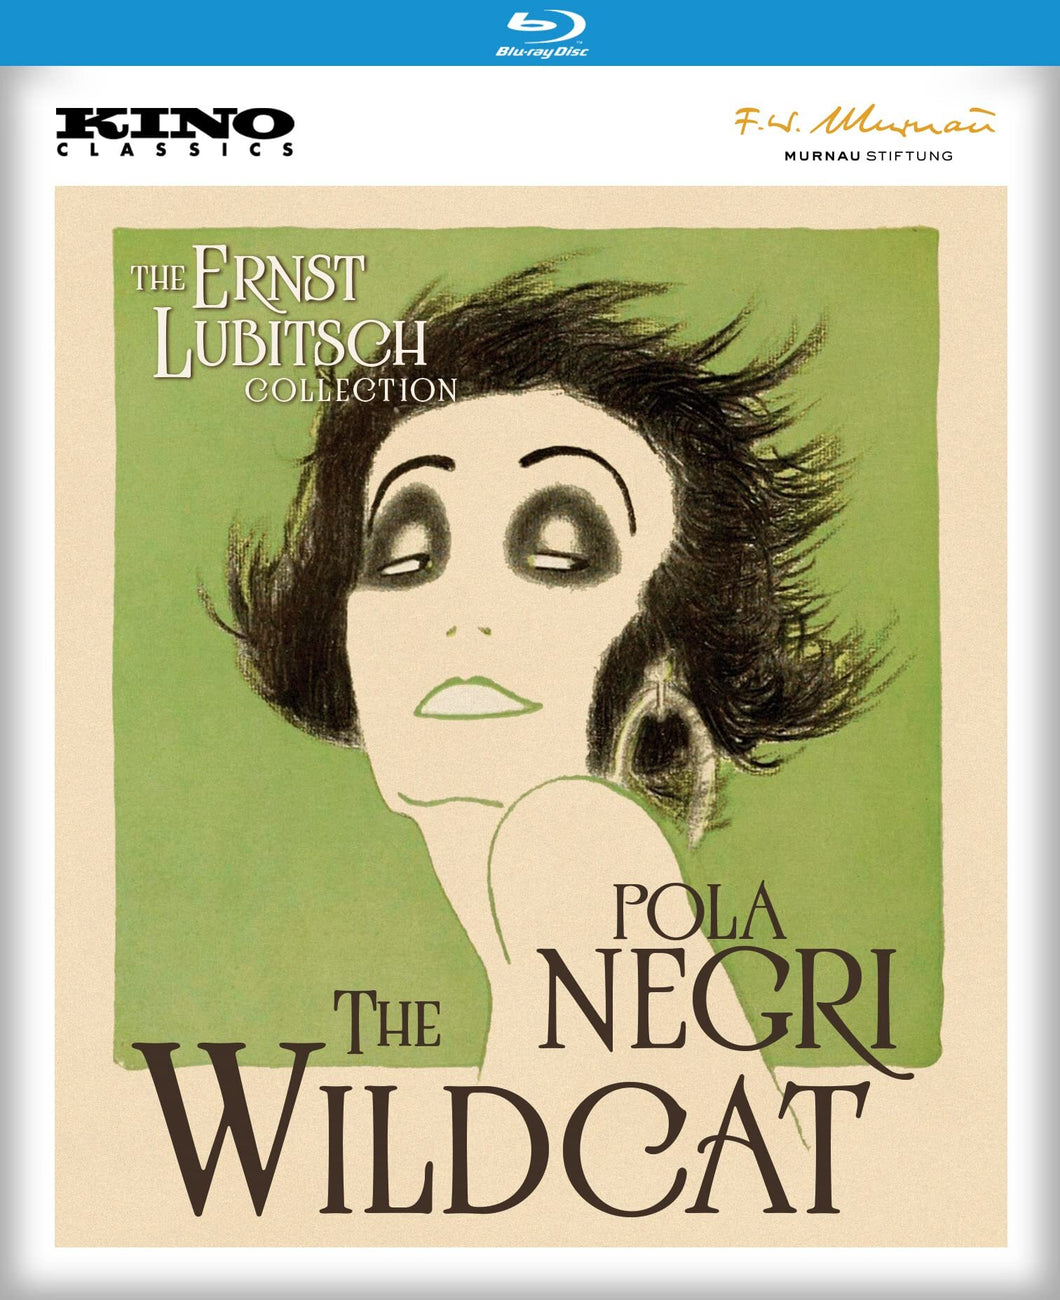 The Wildcat (1921) de Ernst Lubitsch - front cover